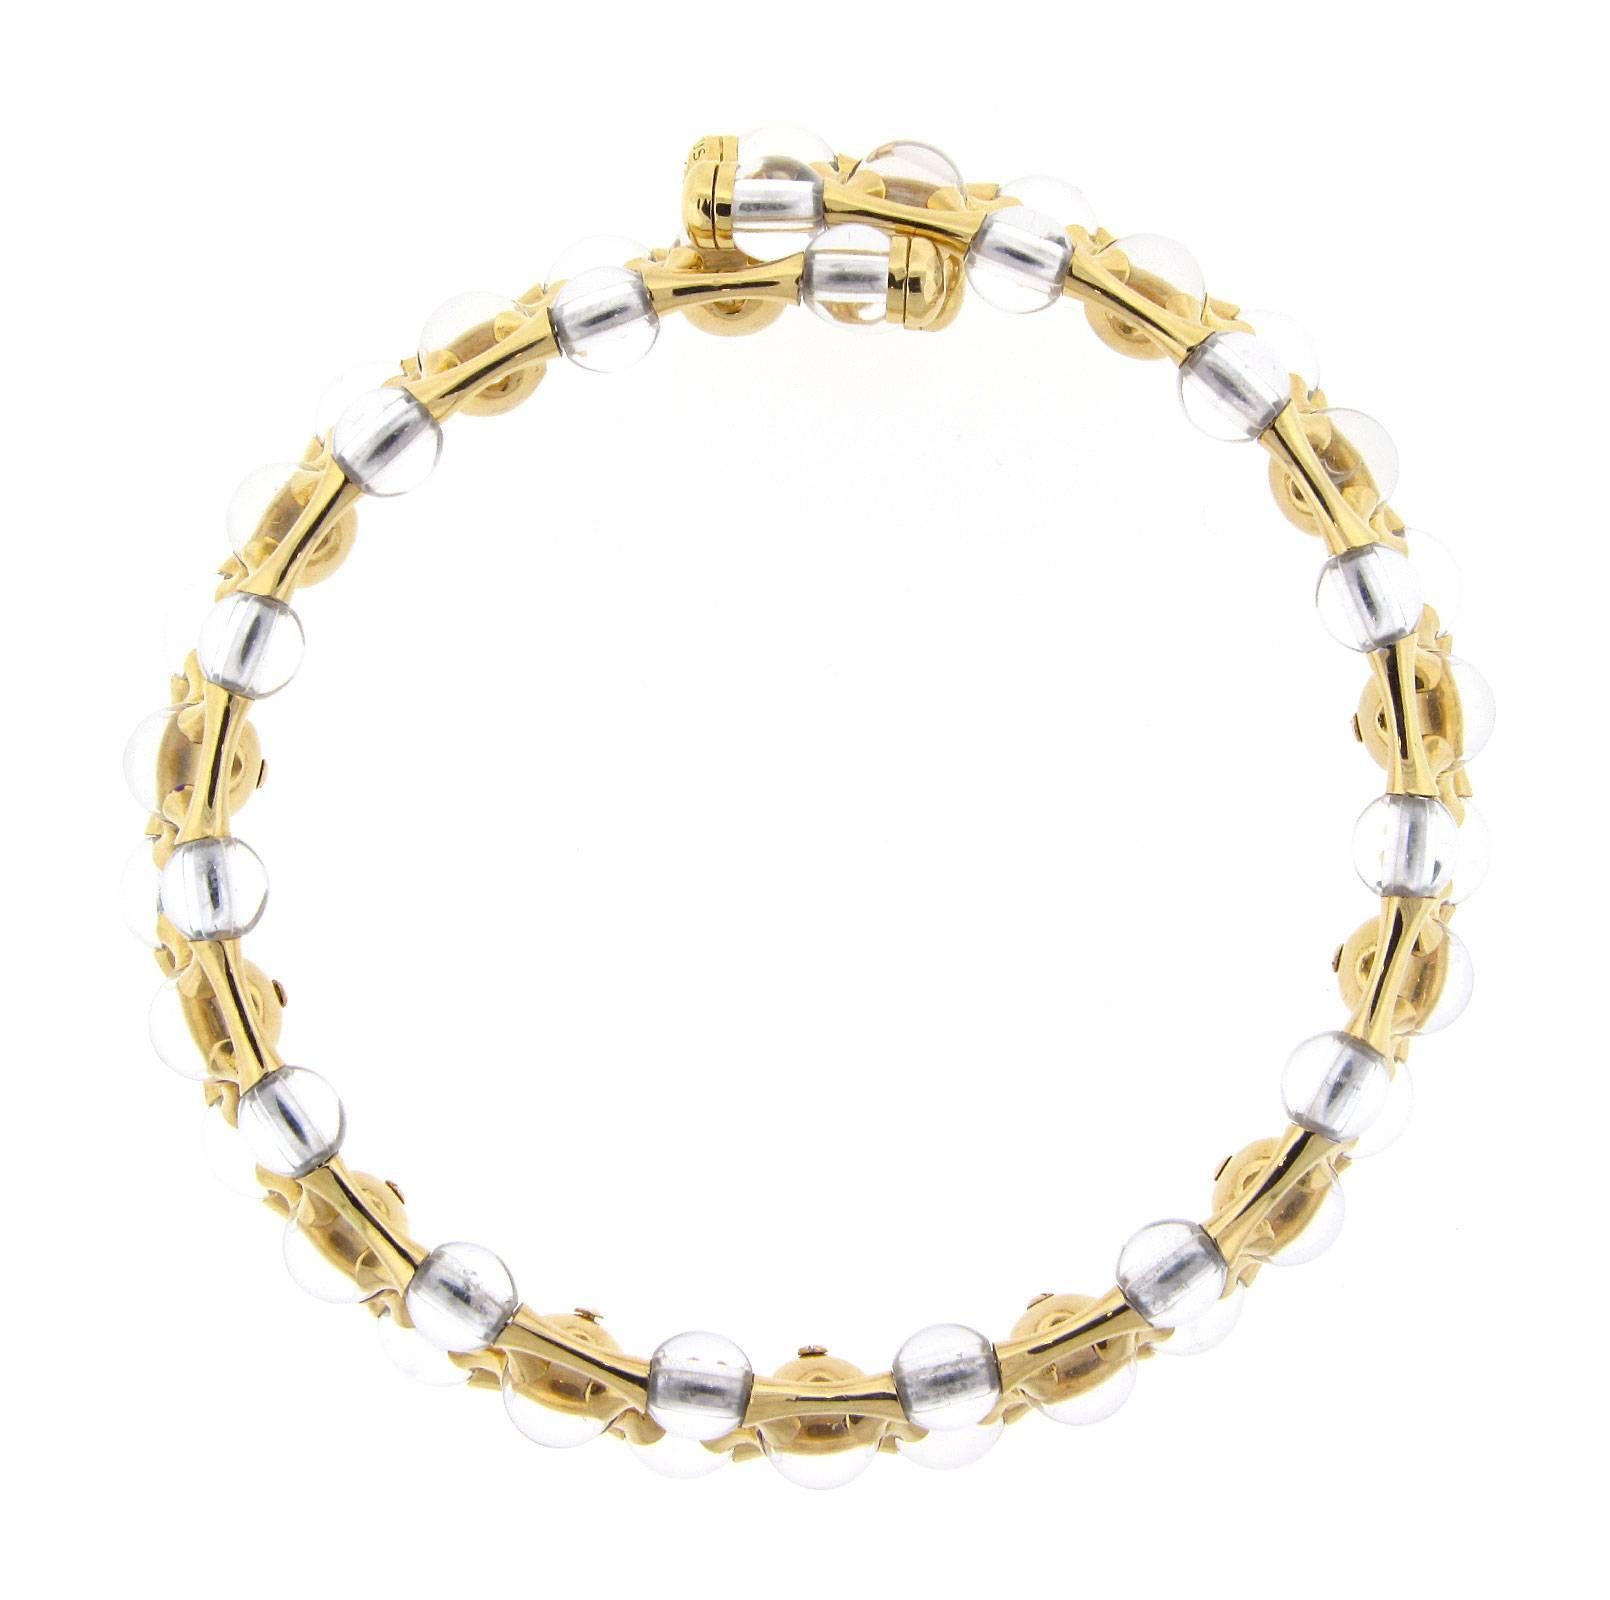 Mauboussin Halskette mit Diamanten und Bergkristallen. Die Halskette ist 15 Zoll lang, besteht aus 18 Karat Gelbgold und wiegt 122,1 DWT (ca. 189,89 Gramm). Außerdem hat er neun runde Diamanten. Außerdem ist er mit dem Stempel 